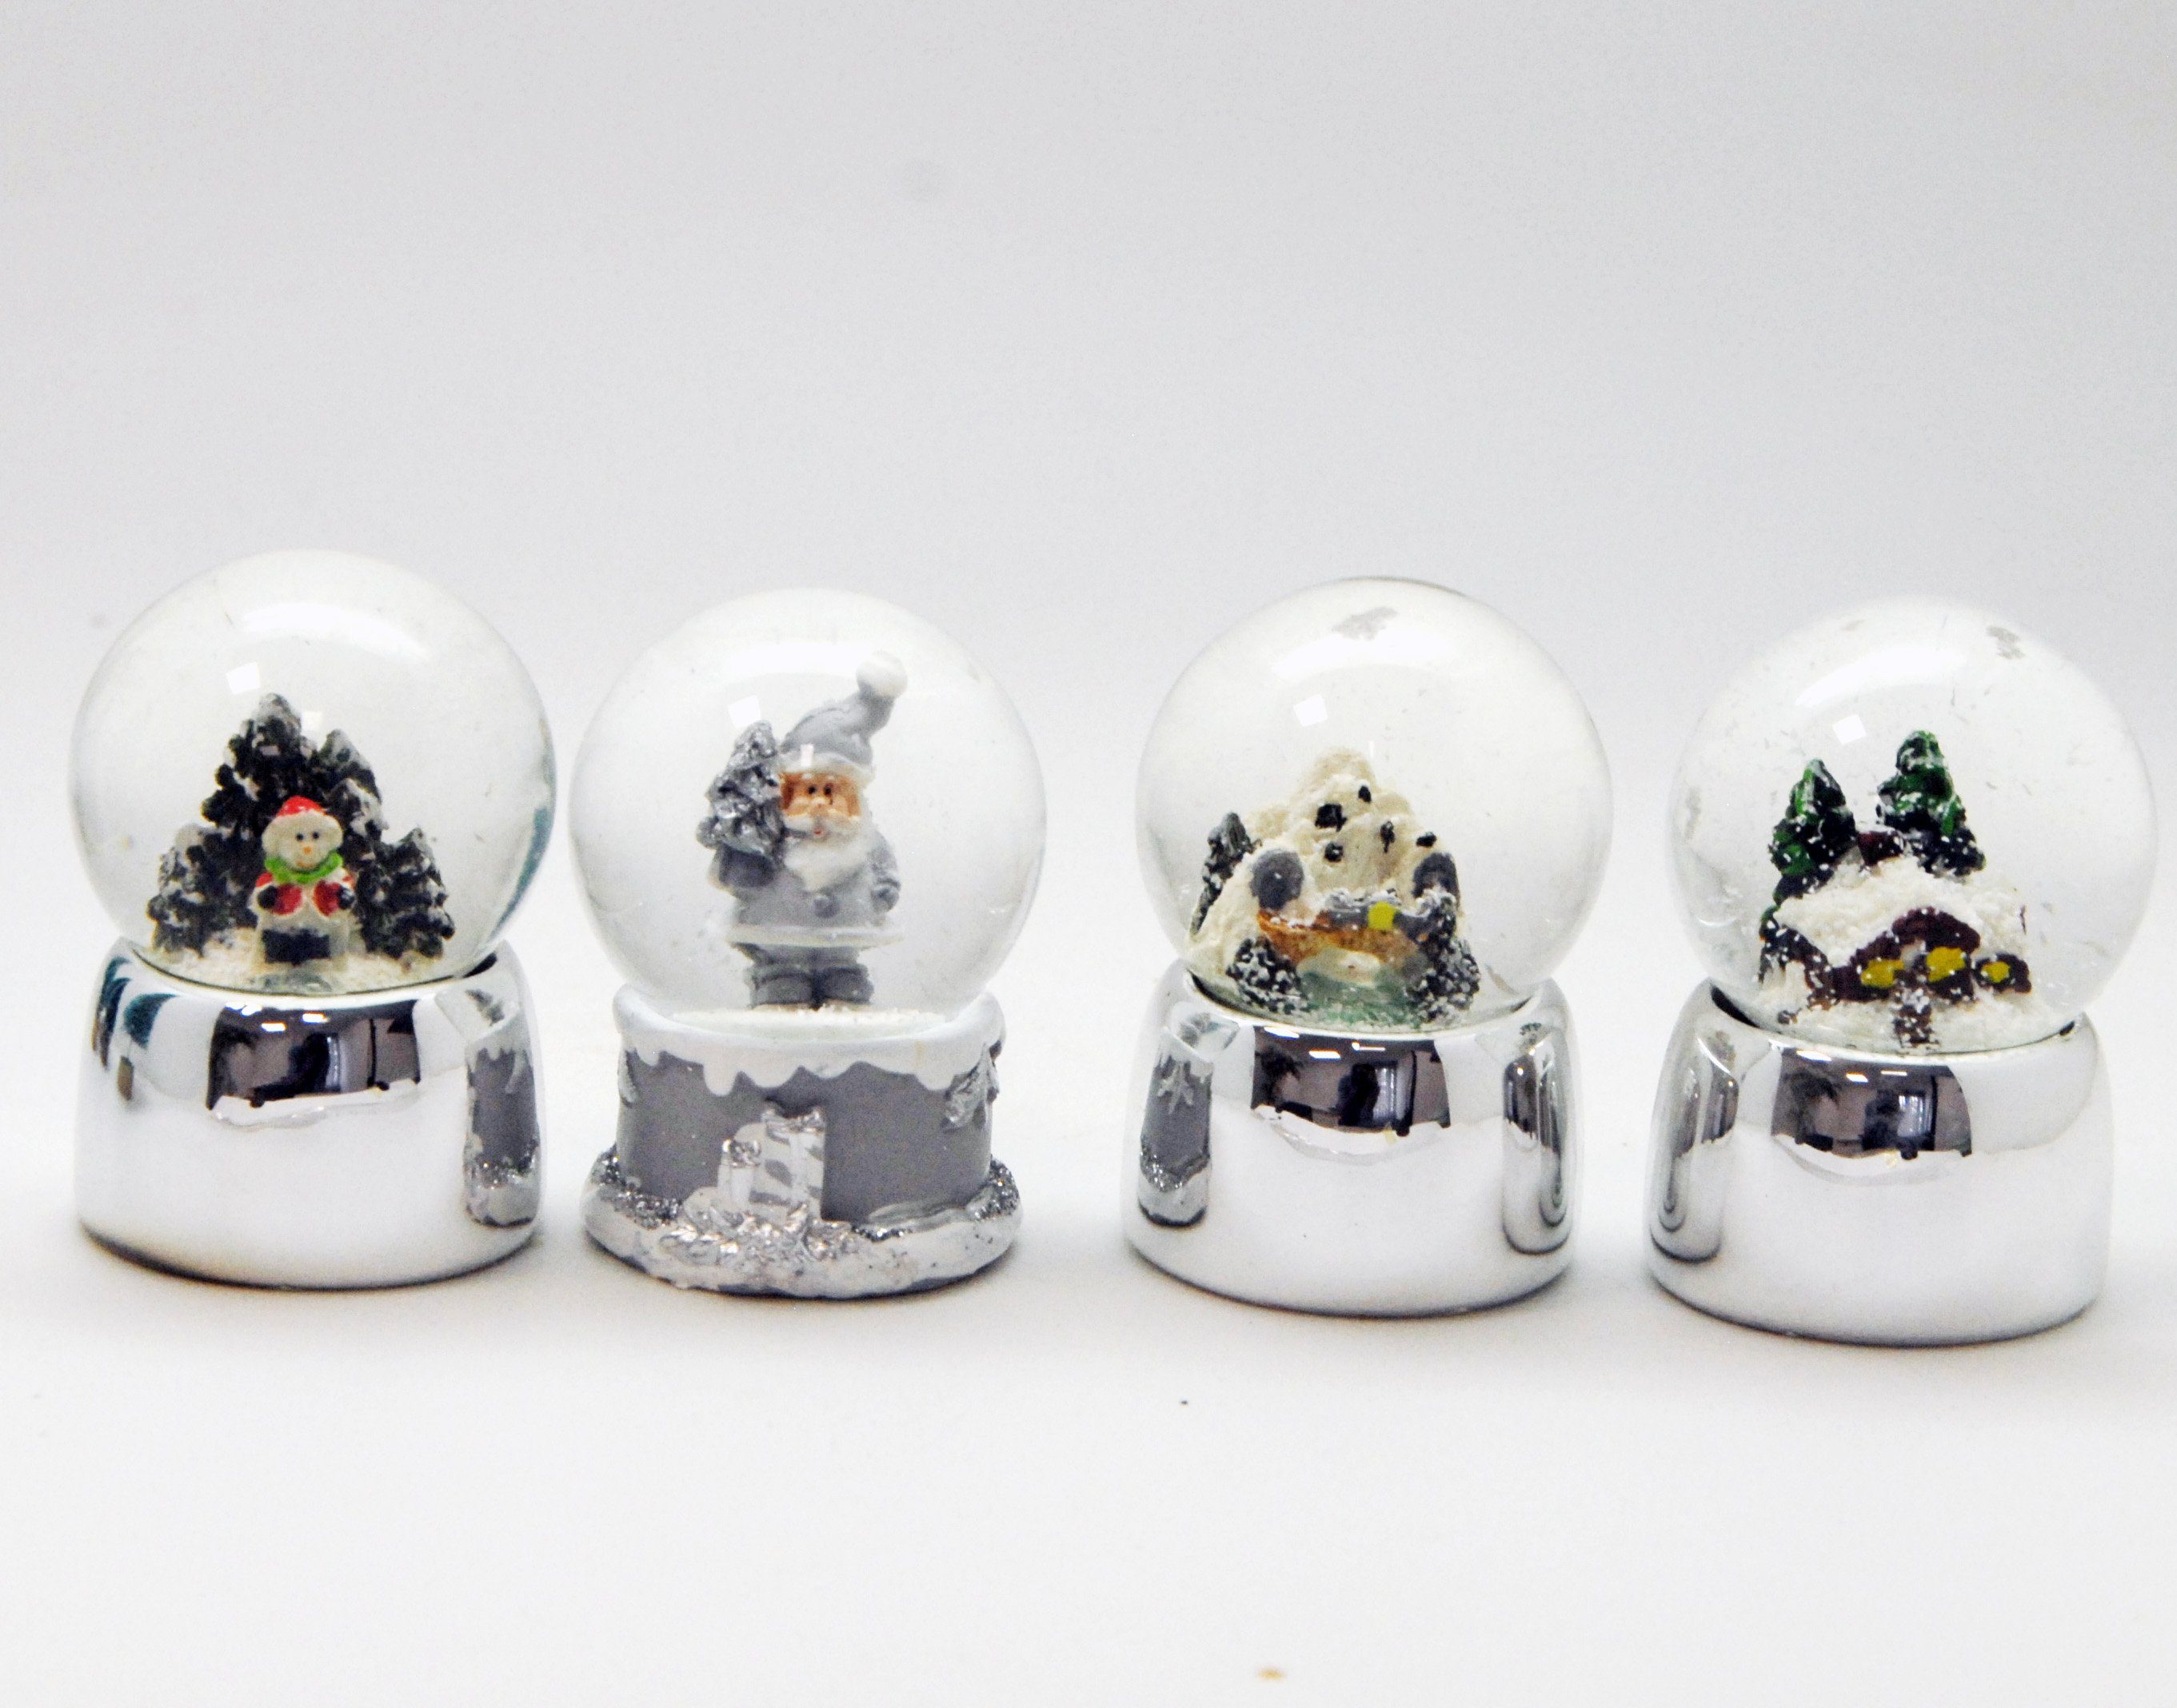 MINIUM-Collection Schneekugel 4er Set süße Mini Schneekugeln Winter Weihnacht 45mm breit silber grau